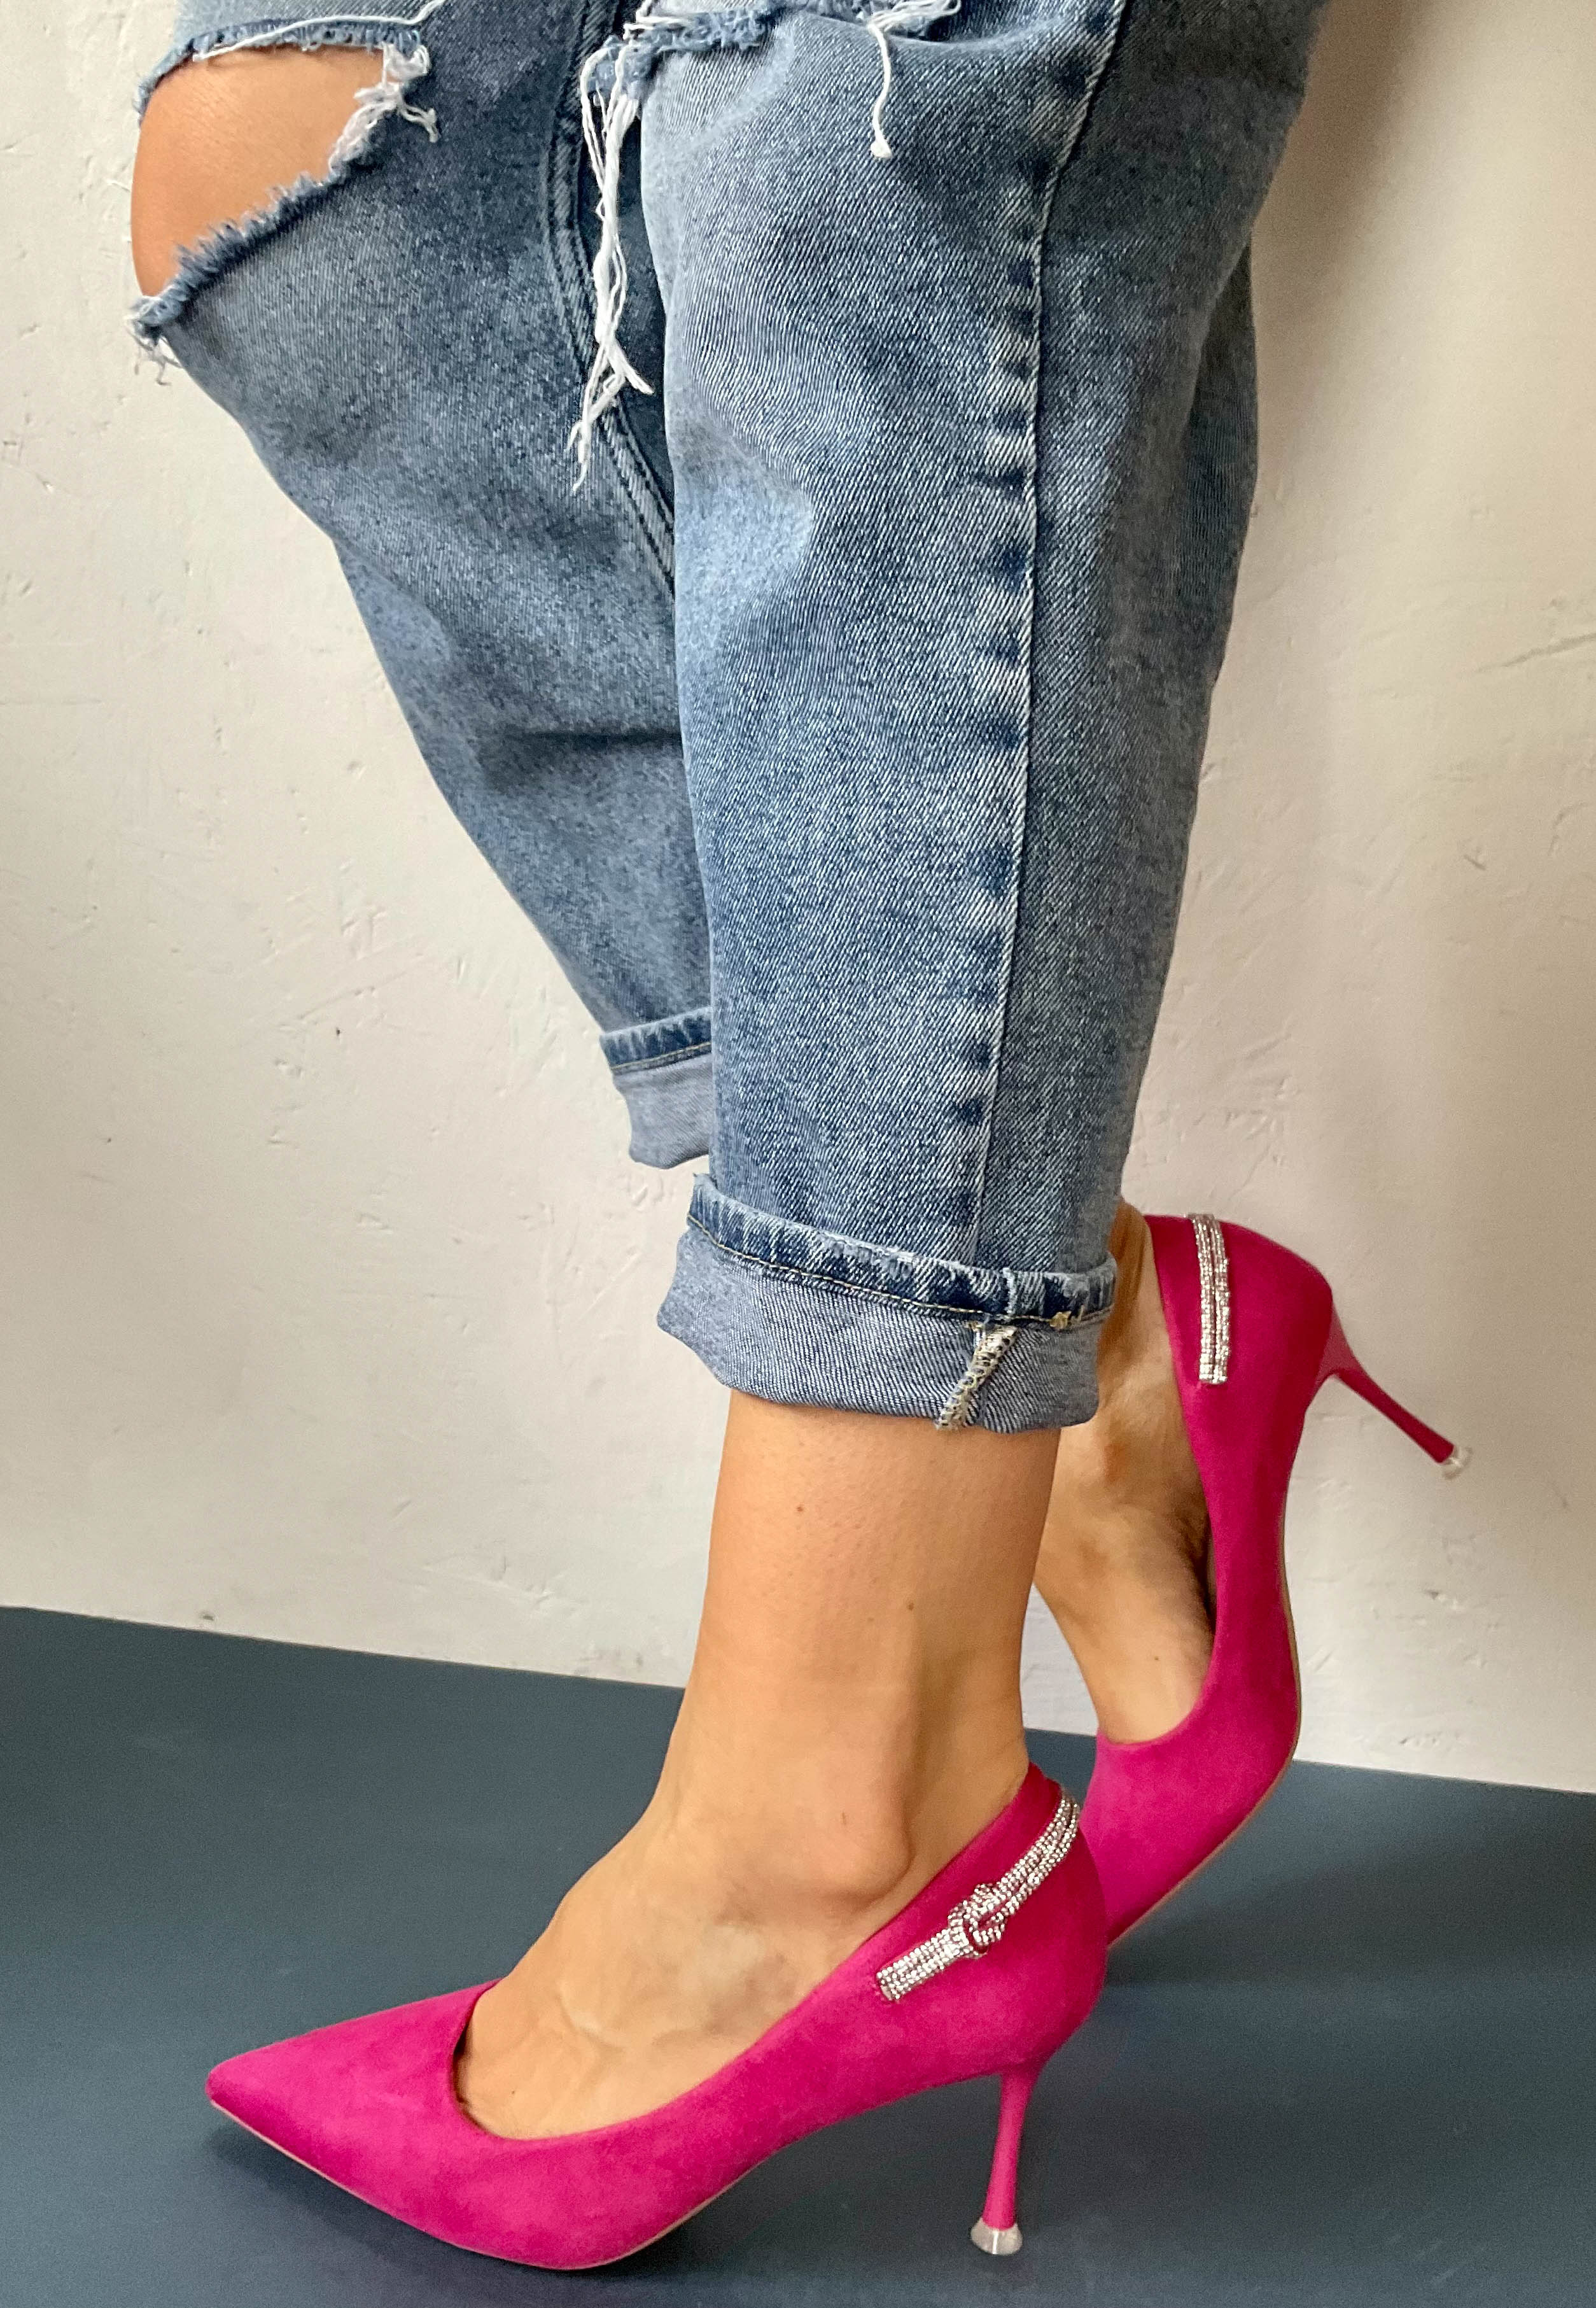 sorento pink 3 inch heels